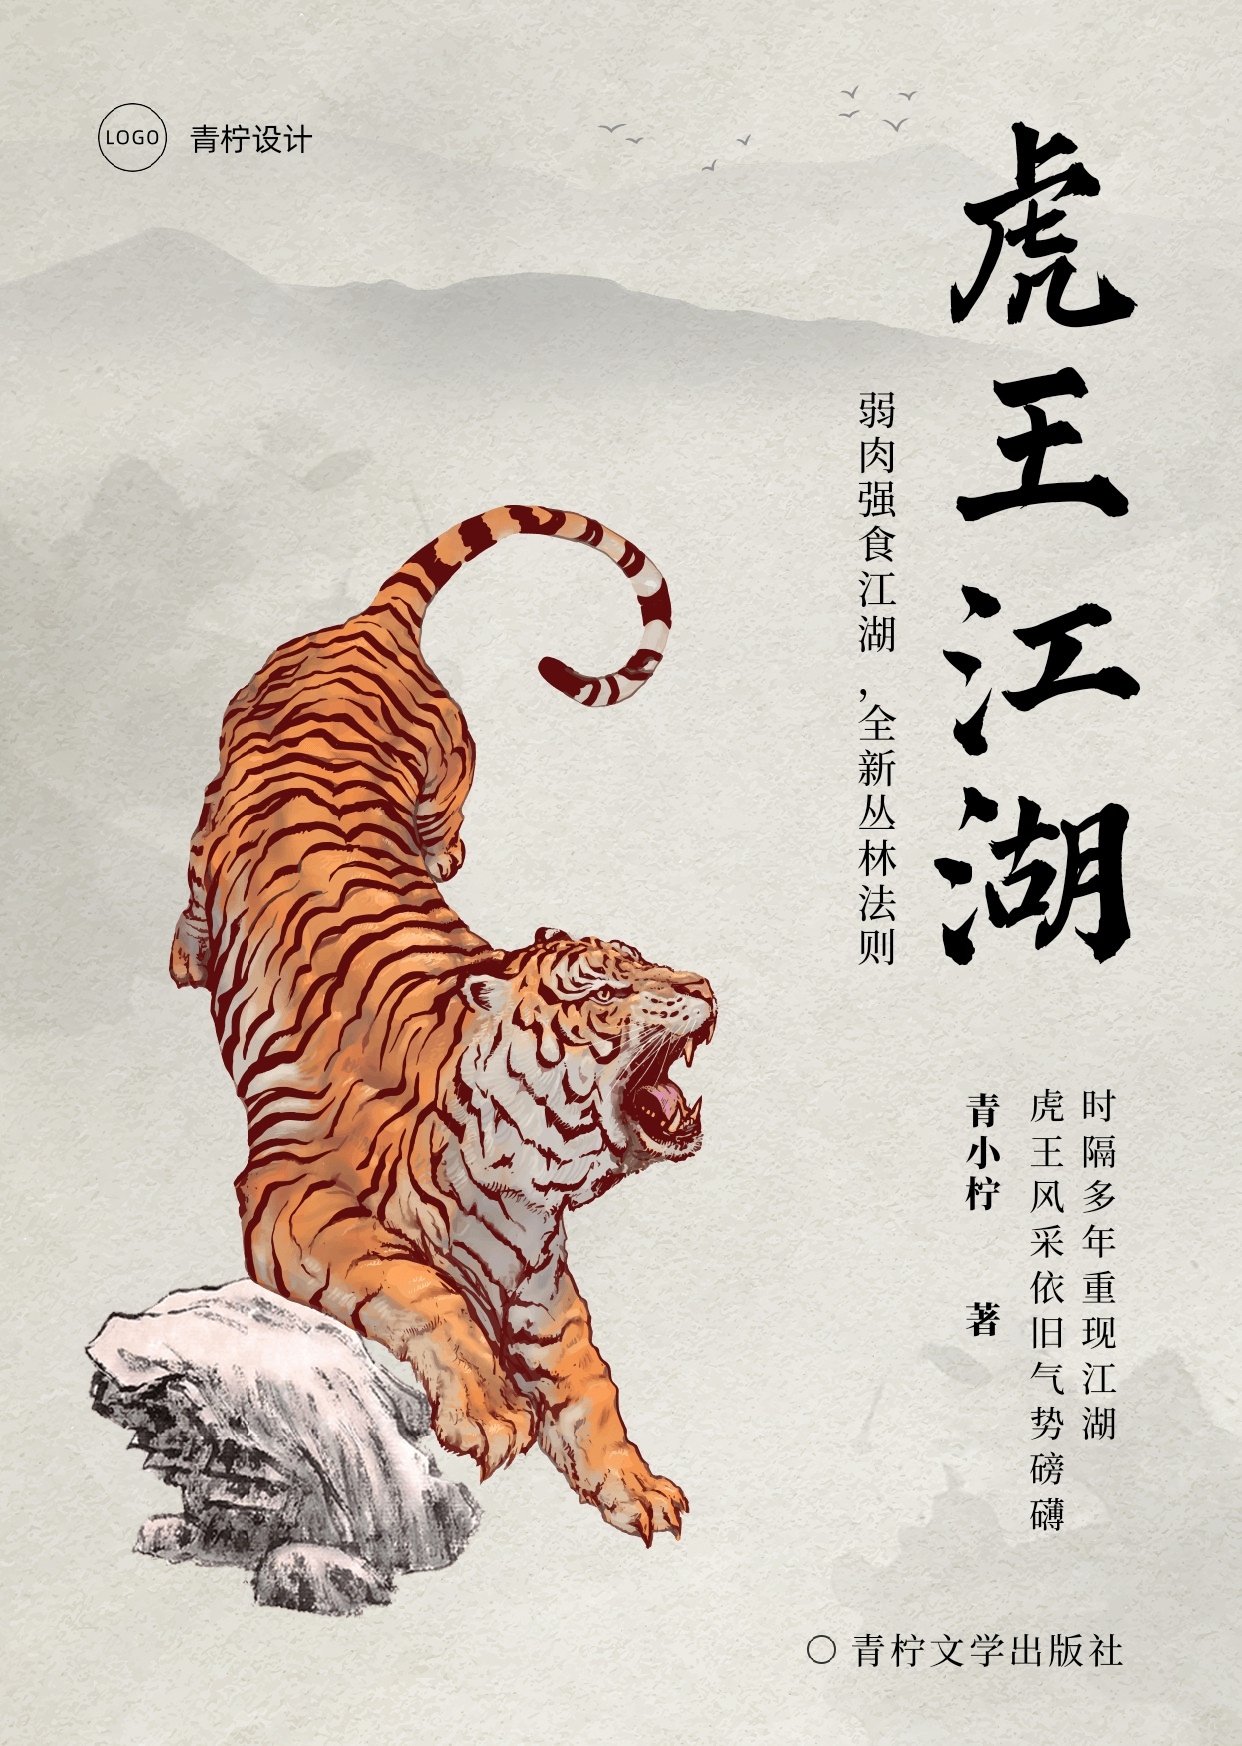 中国风现代文学书籍封面